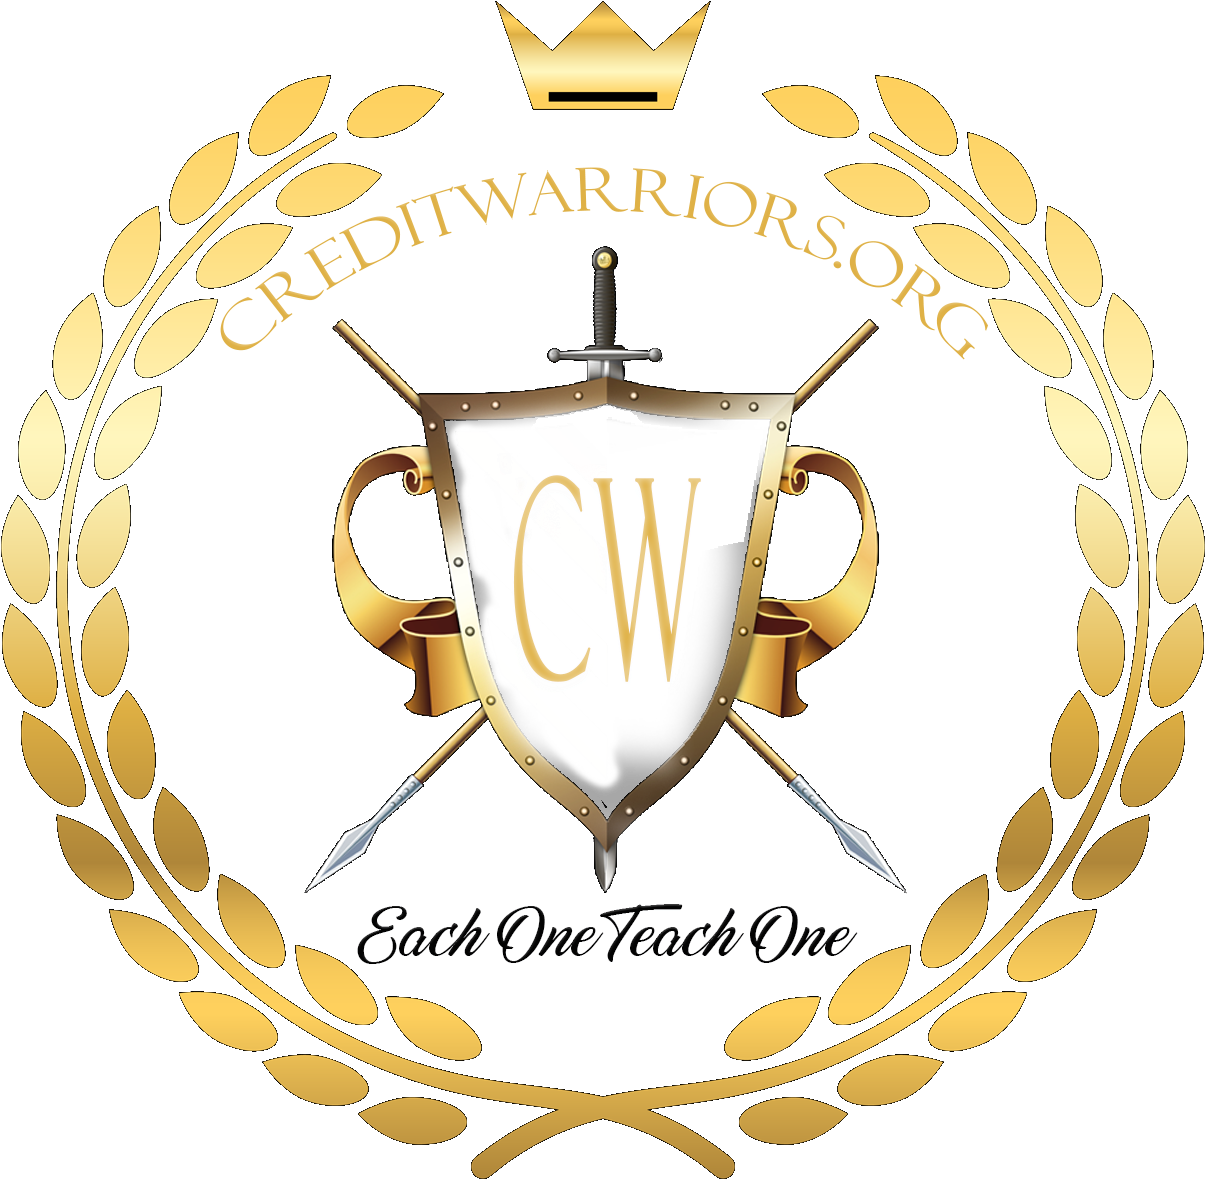 Credit Warriors Logo PNG